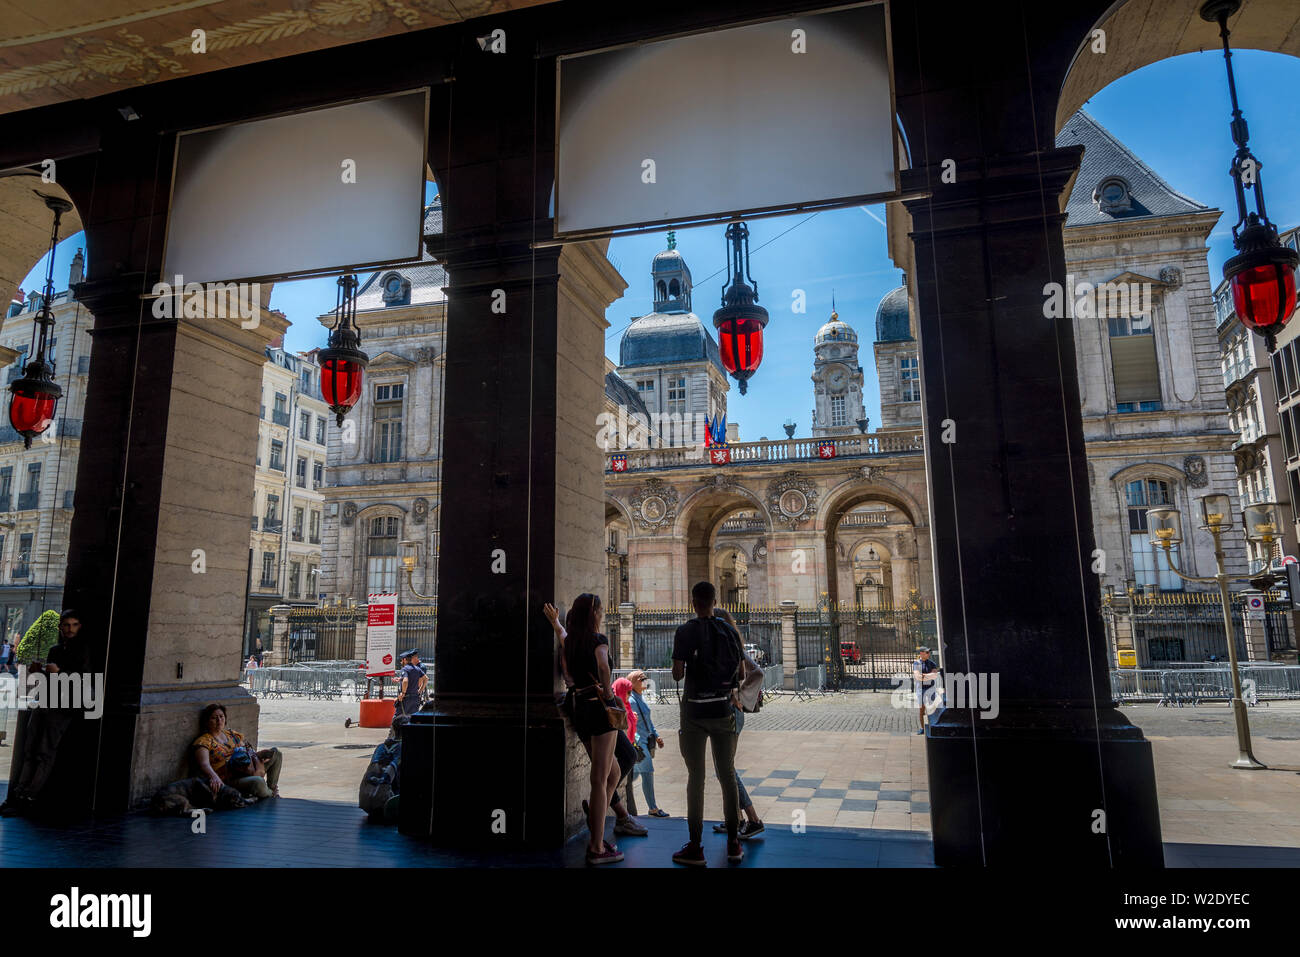 Città monumentale Hall presso la Place des Terreaux visto attraverso gli archi del Teatro dell'Opera, Lione, Francia Foto Stock